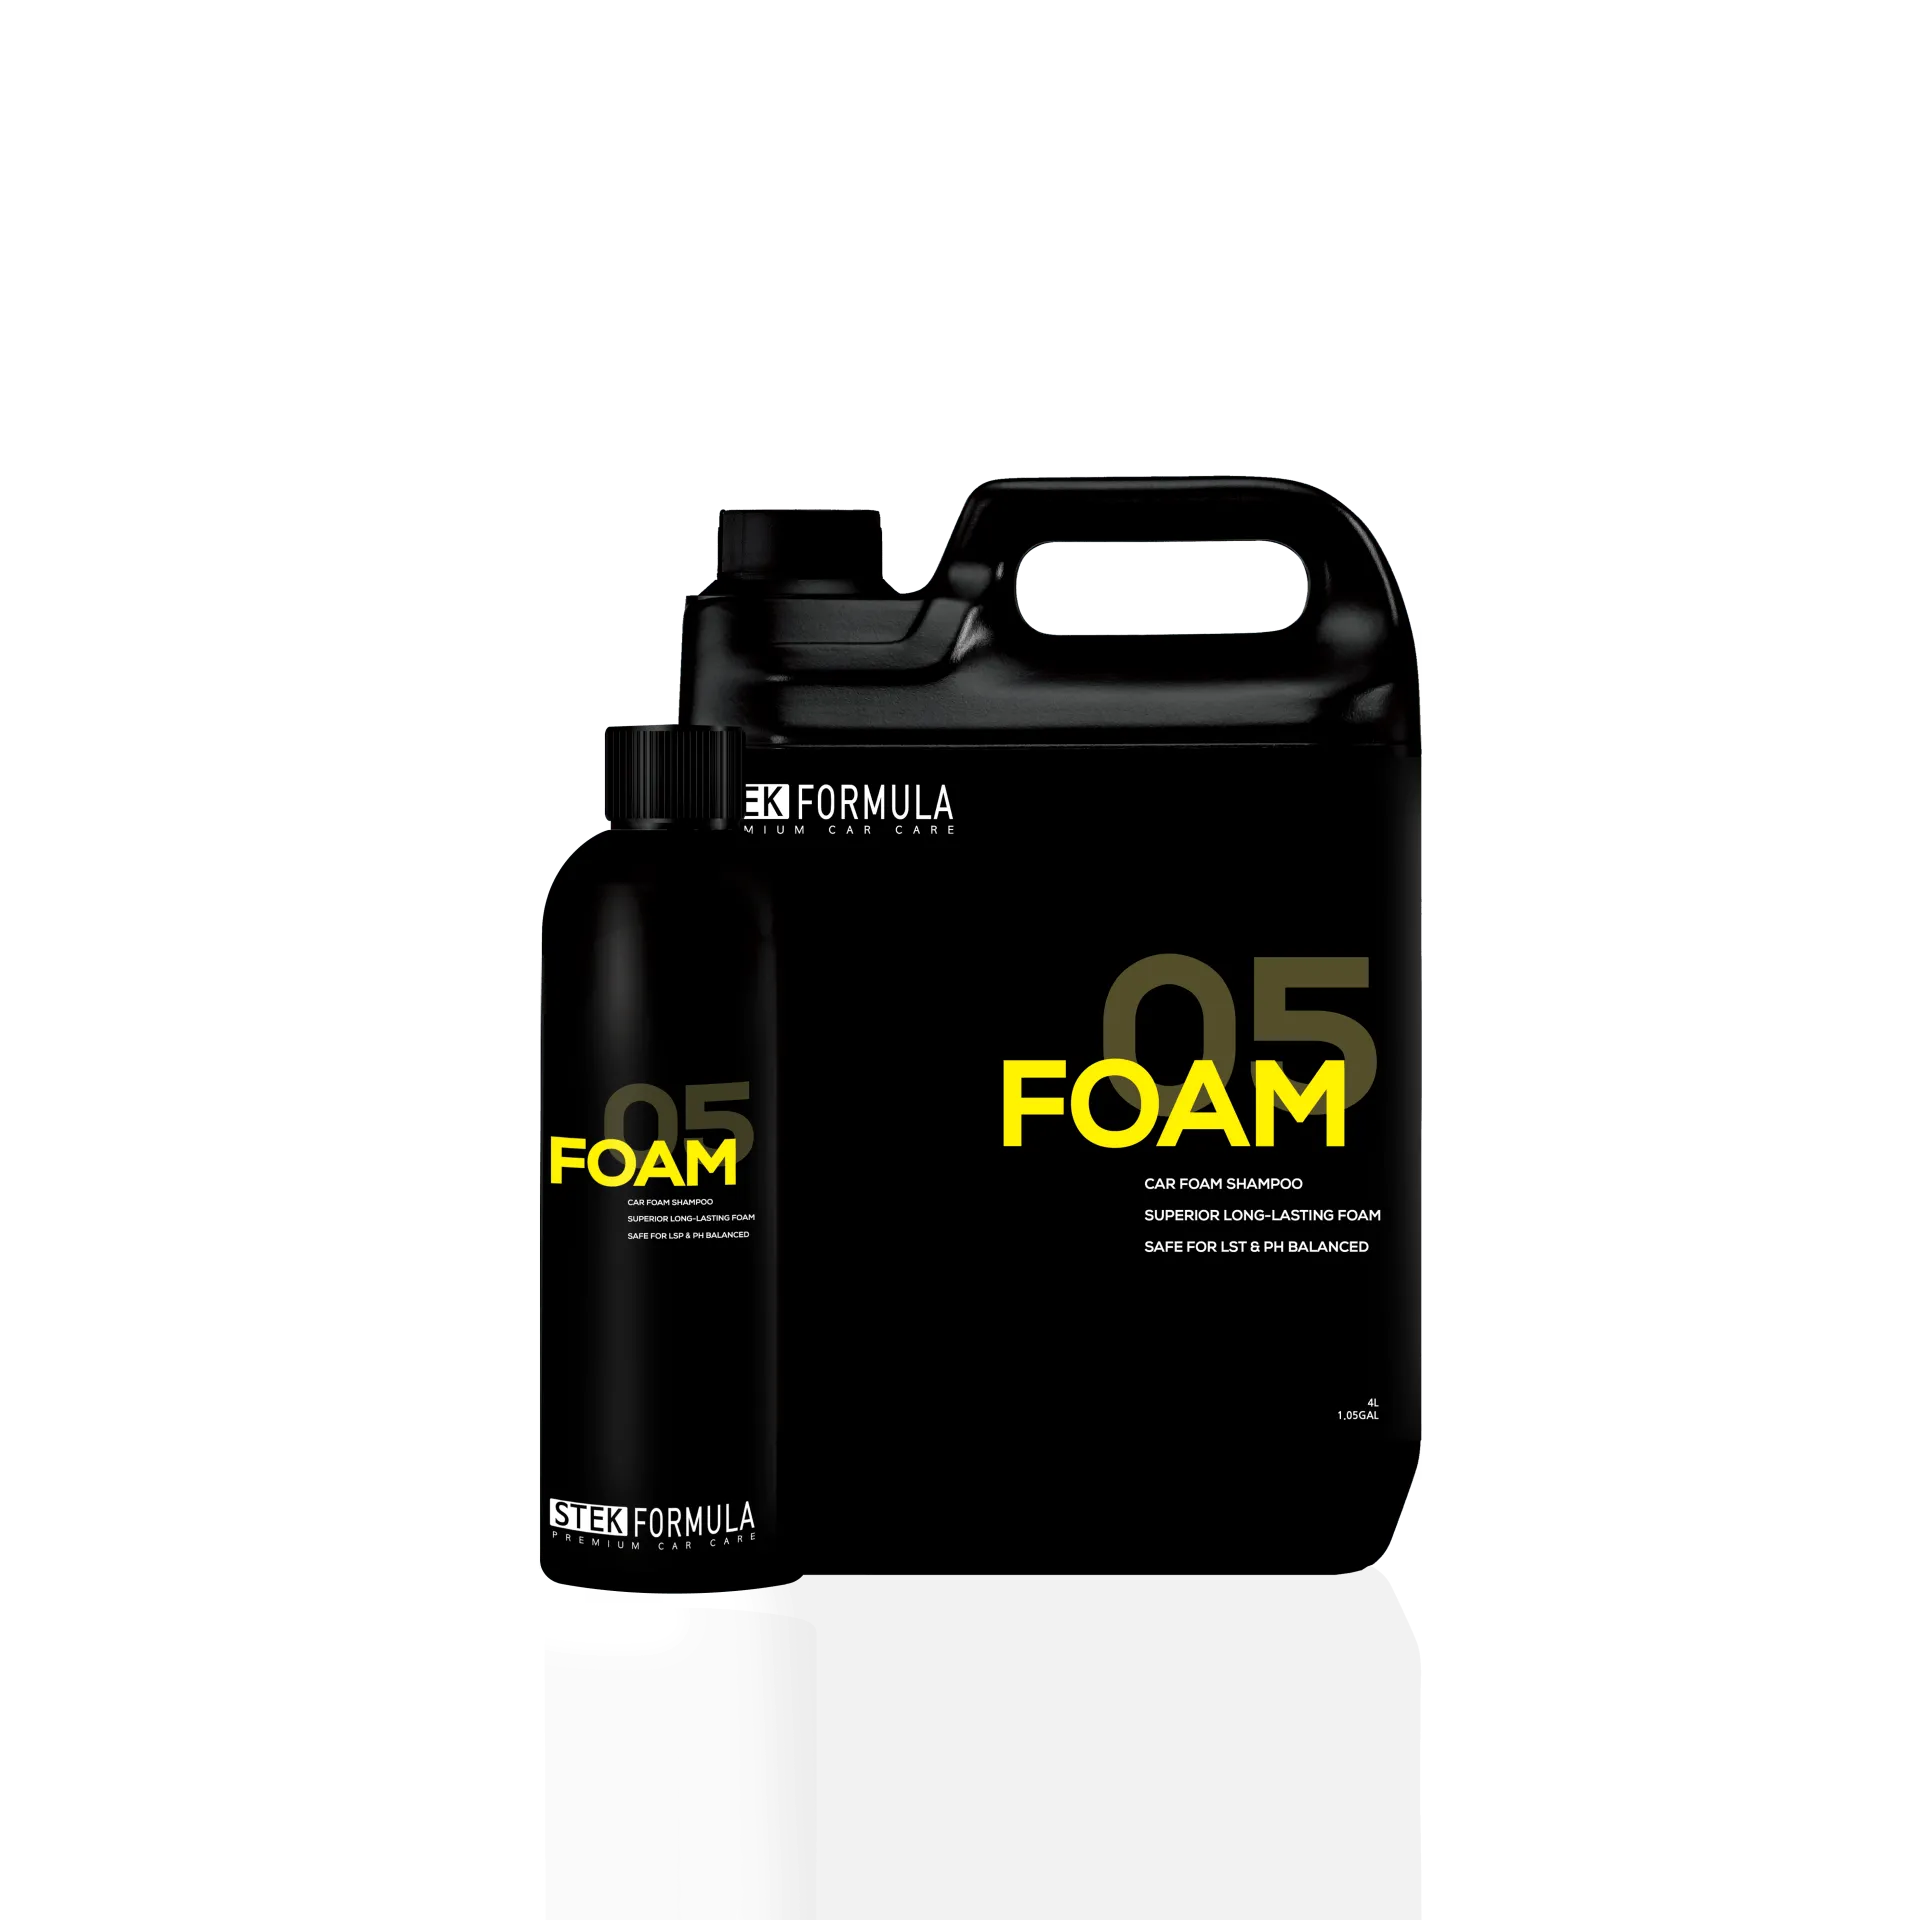 STEK Formula 05 Foam | Car Foam Shampoo - Parks Car Care 